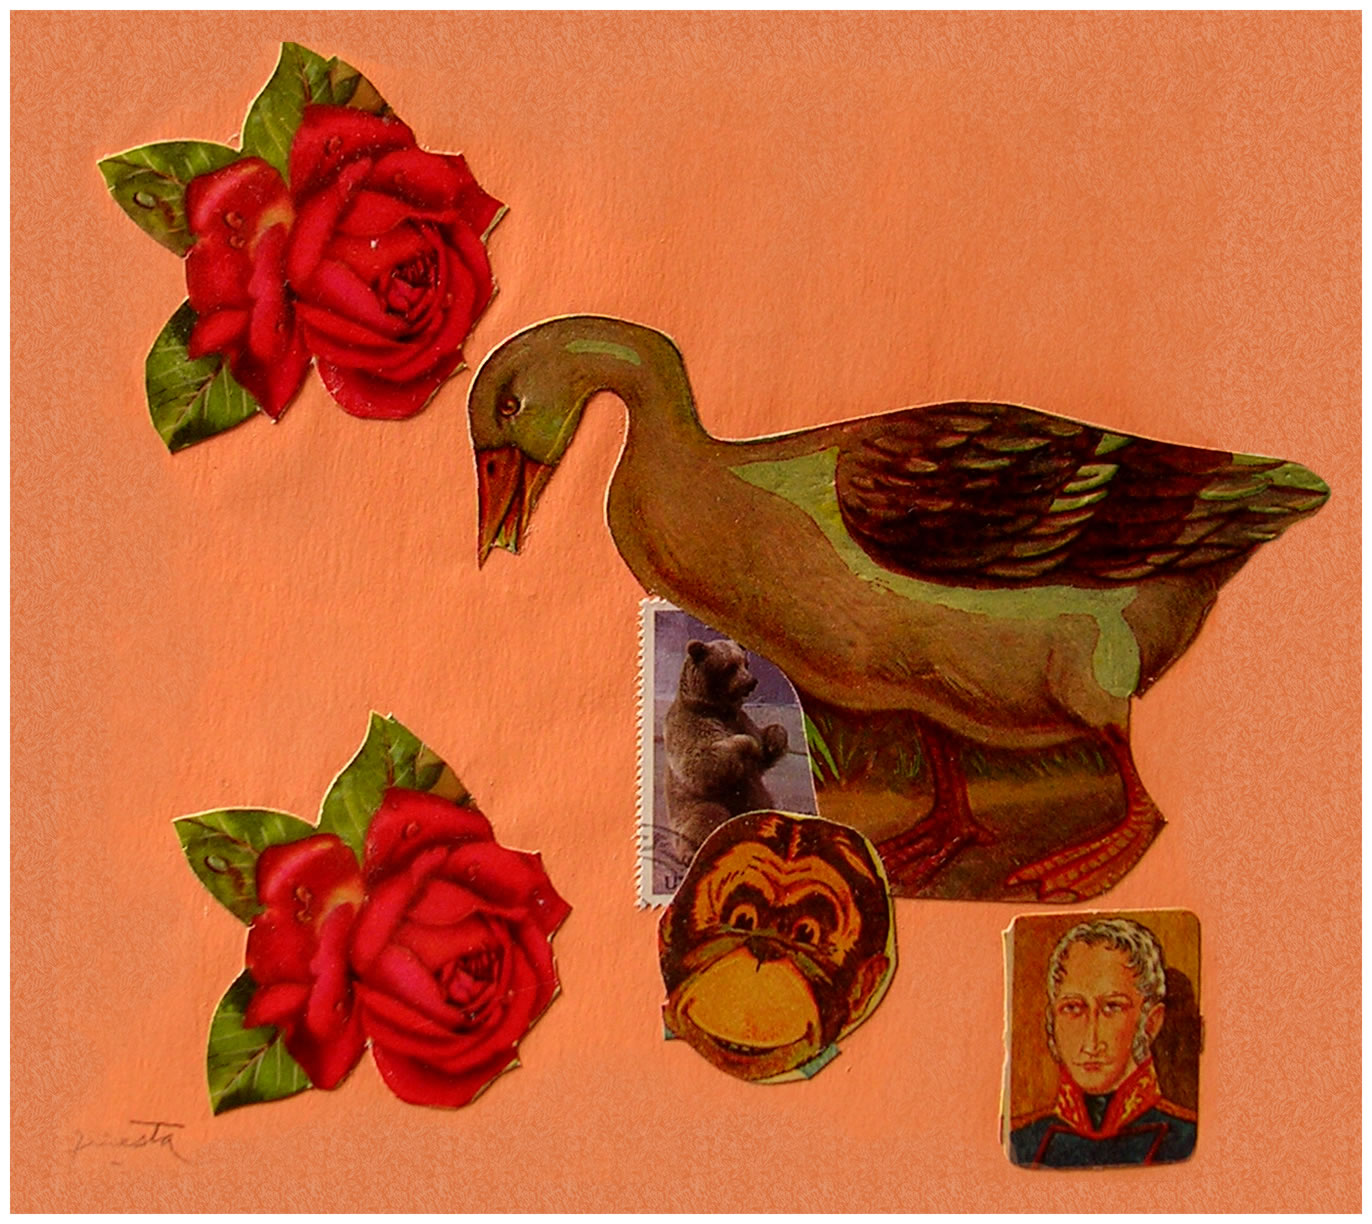 El pato y el mono,  papel collage, 15 cm x 15 cm, 1999